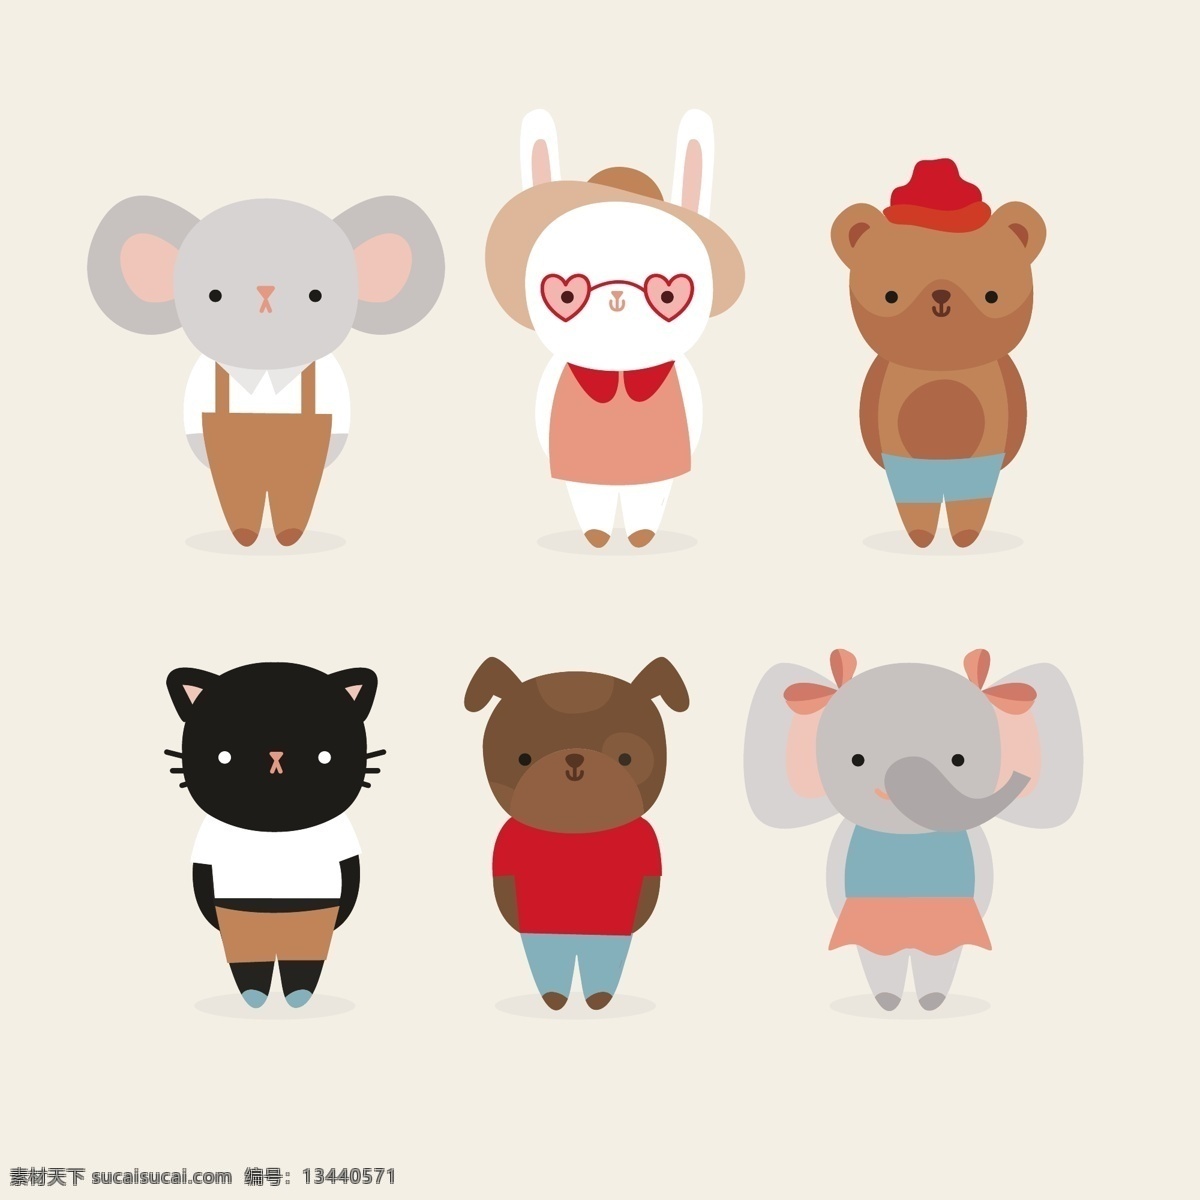 可爱的动物 狗 自然 猫 动物 卡通 绘制 可爱 大象 服装 小鼠 兔 绘画 小兔子 卡通动物 抽纱 野 最新矢量素材